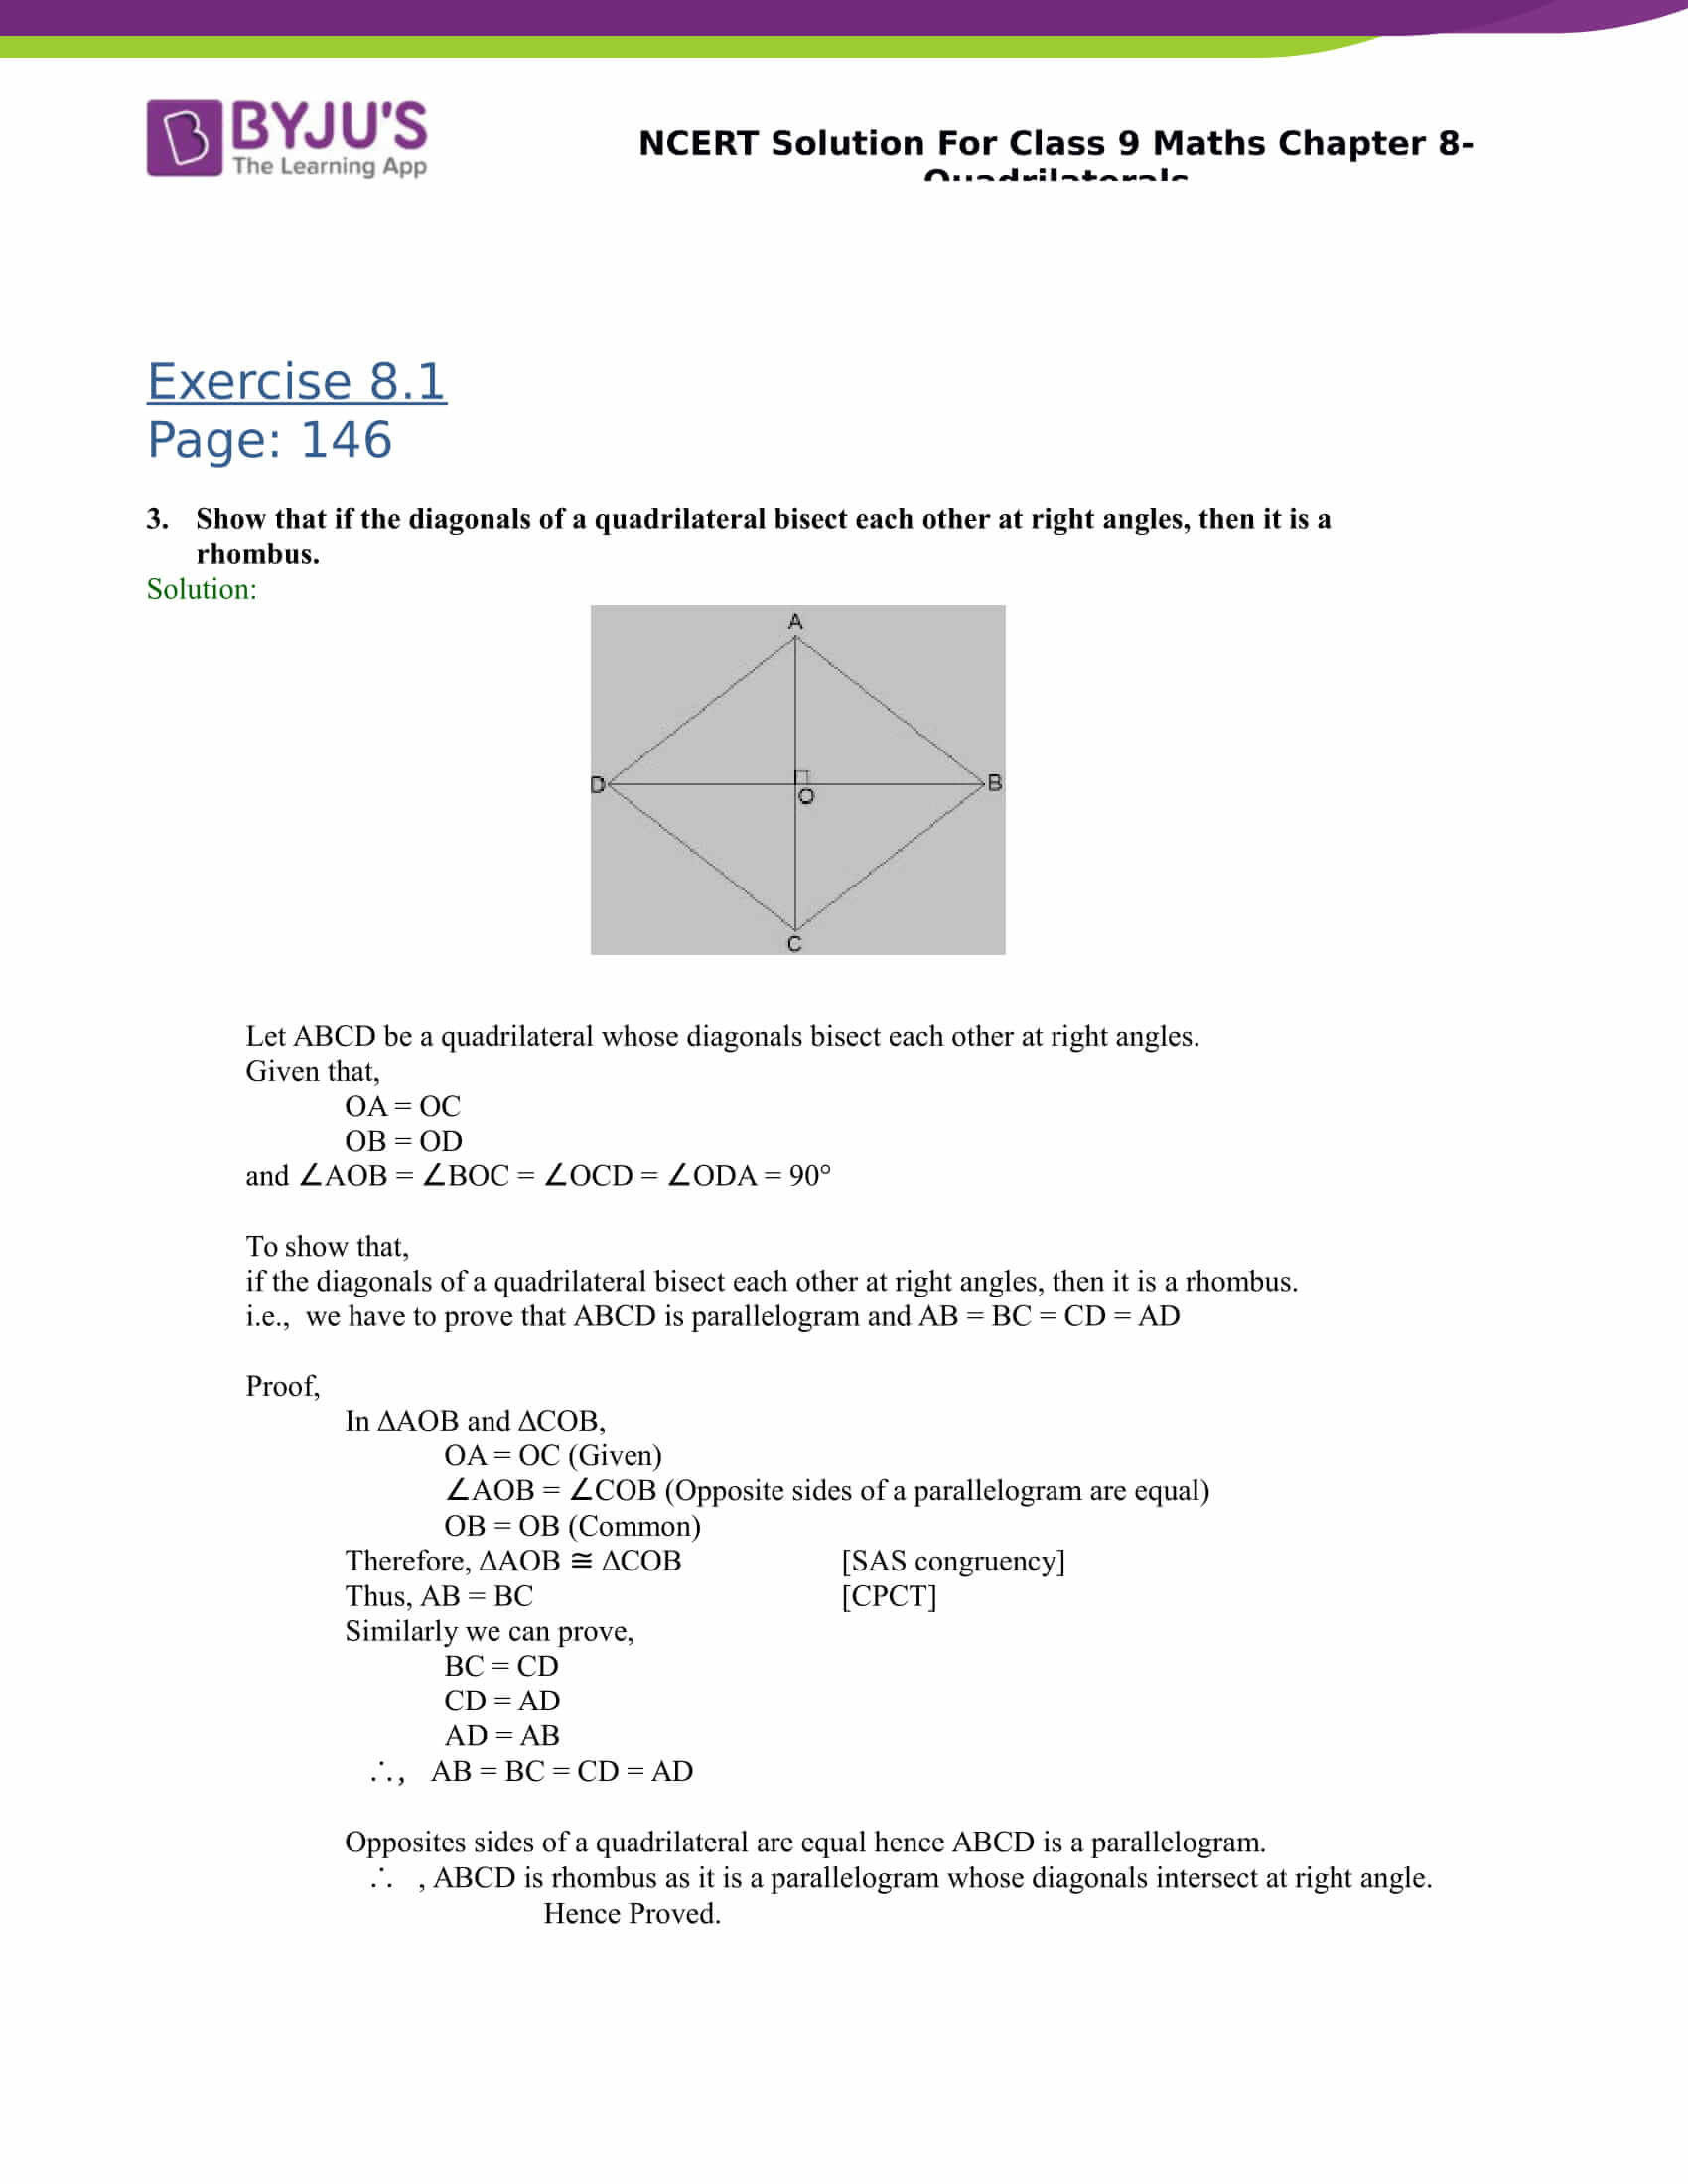 NCERT Solution for class 9 Maths Chapter 8 Quadrilaterals 02